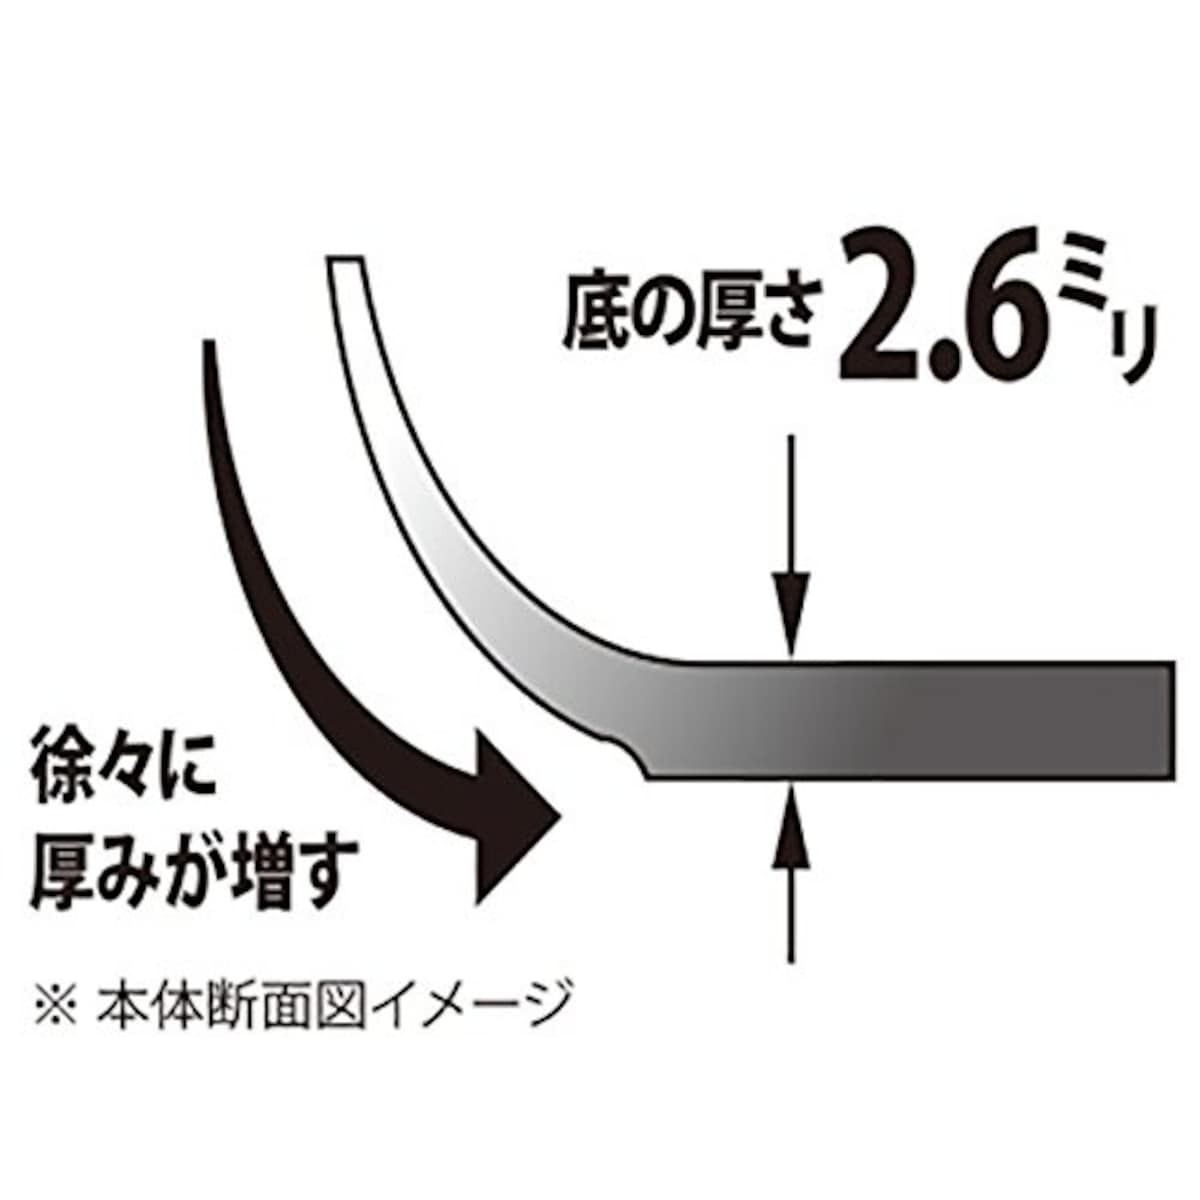  ウルシヤマ金属工業 フライパン 26cm ガス火専用 日本製 軽量 杏 ANN-F26 PFOAフリー画像3 